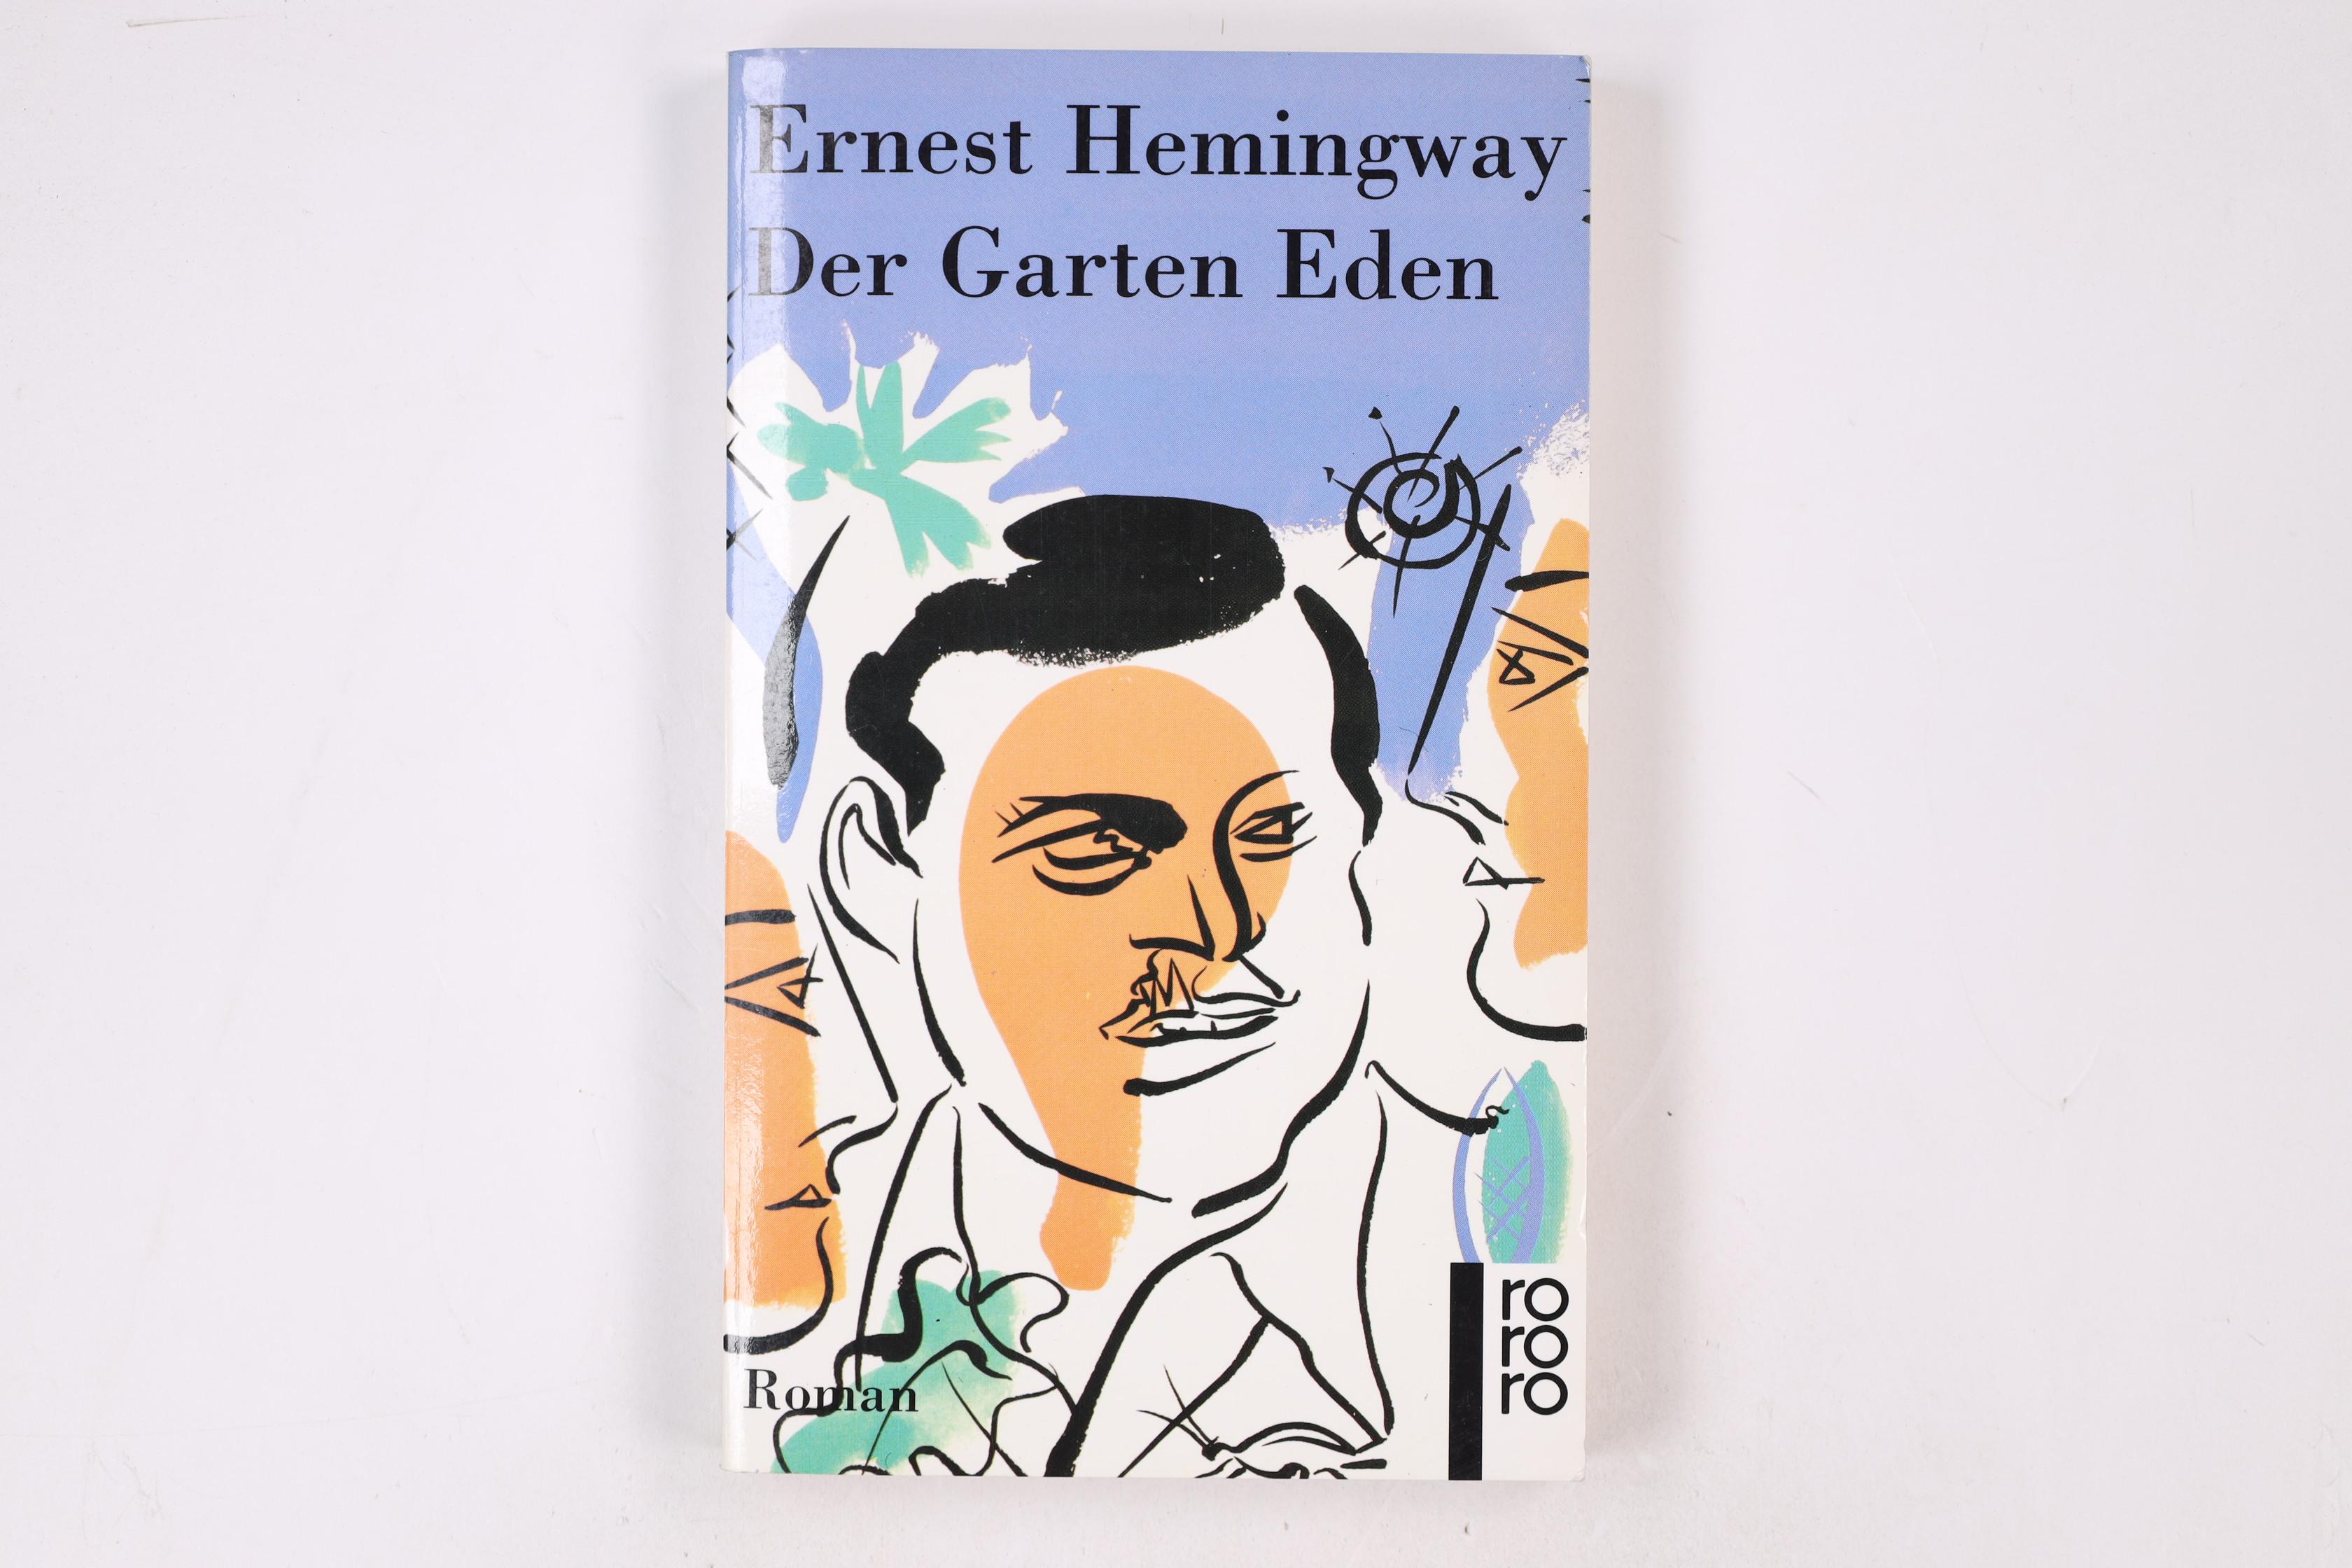 DER GARTEN EDEN. Roman - Hemingway, Ernest